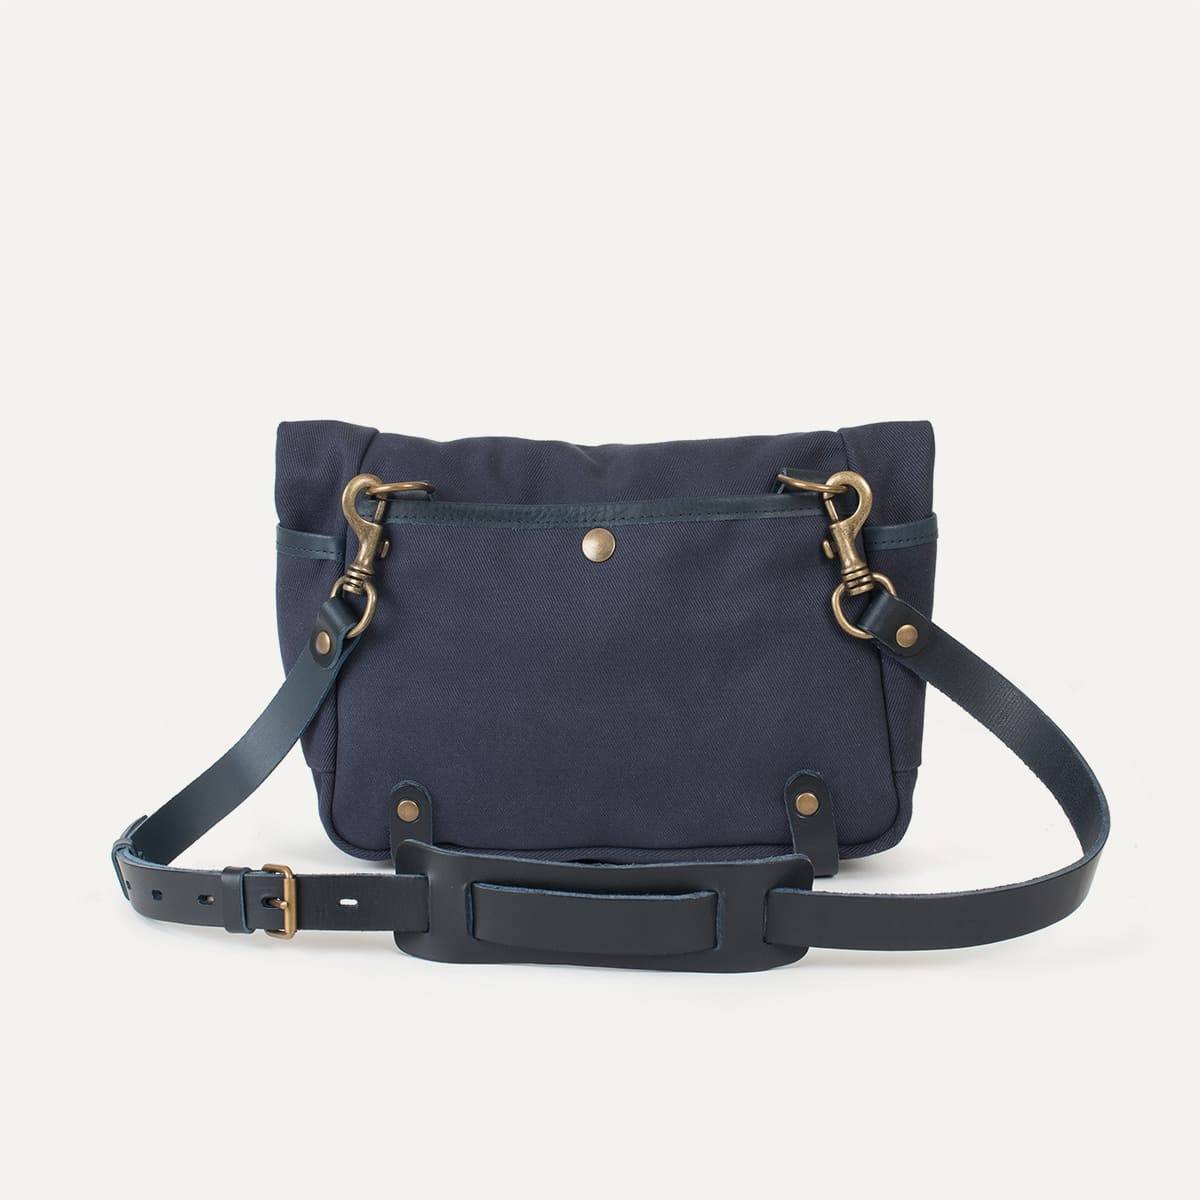 Go Rummaging With Bleu de Chauffe's Gaston Tool Bag